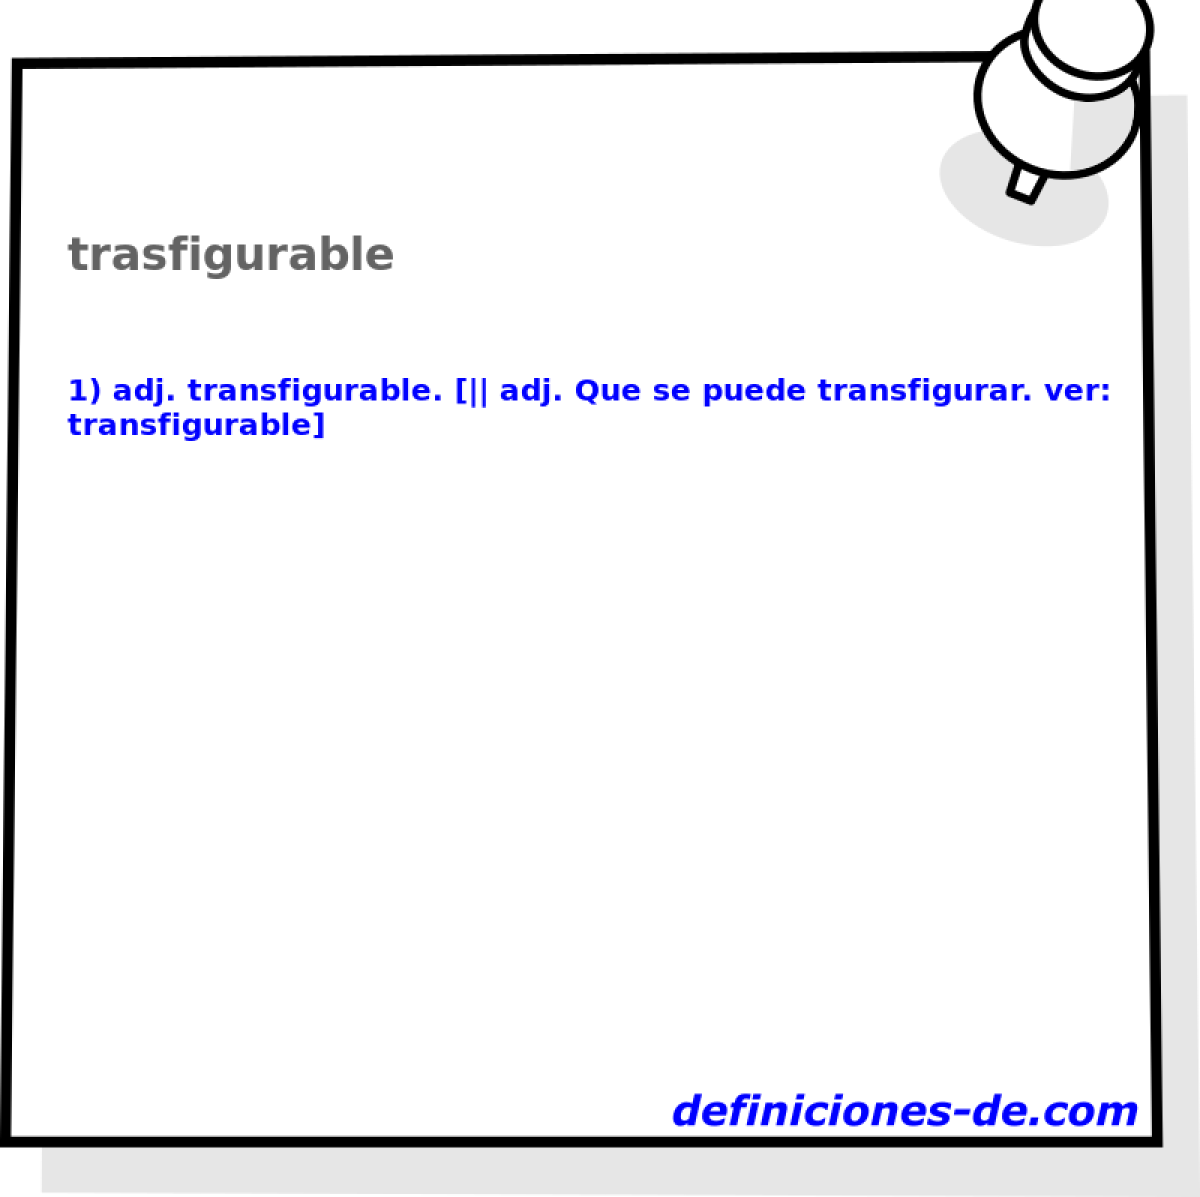 trasfigurable 